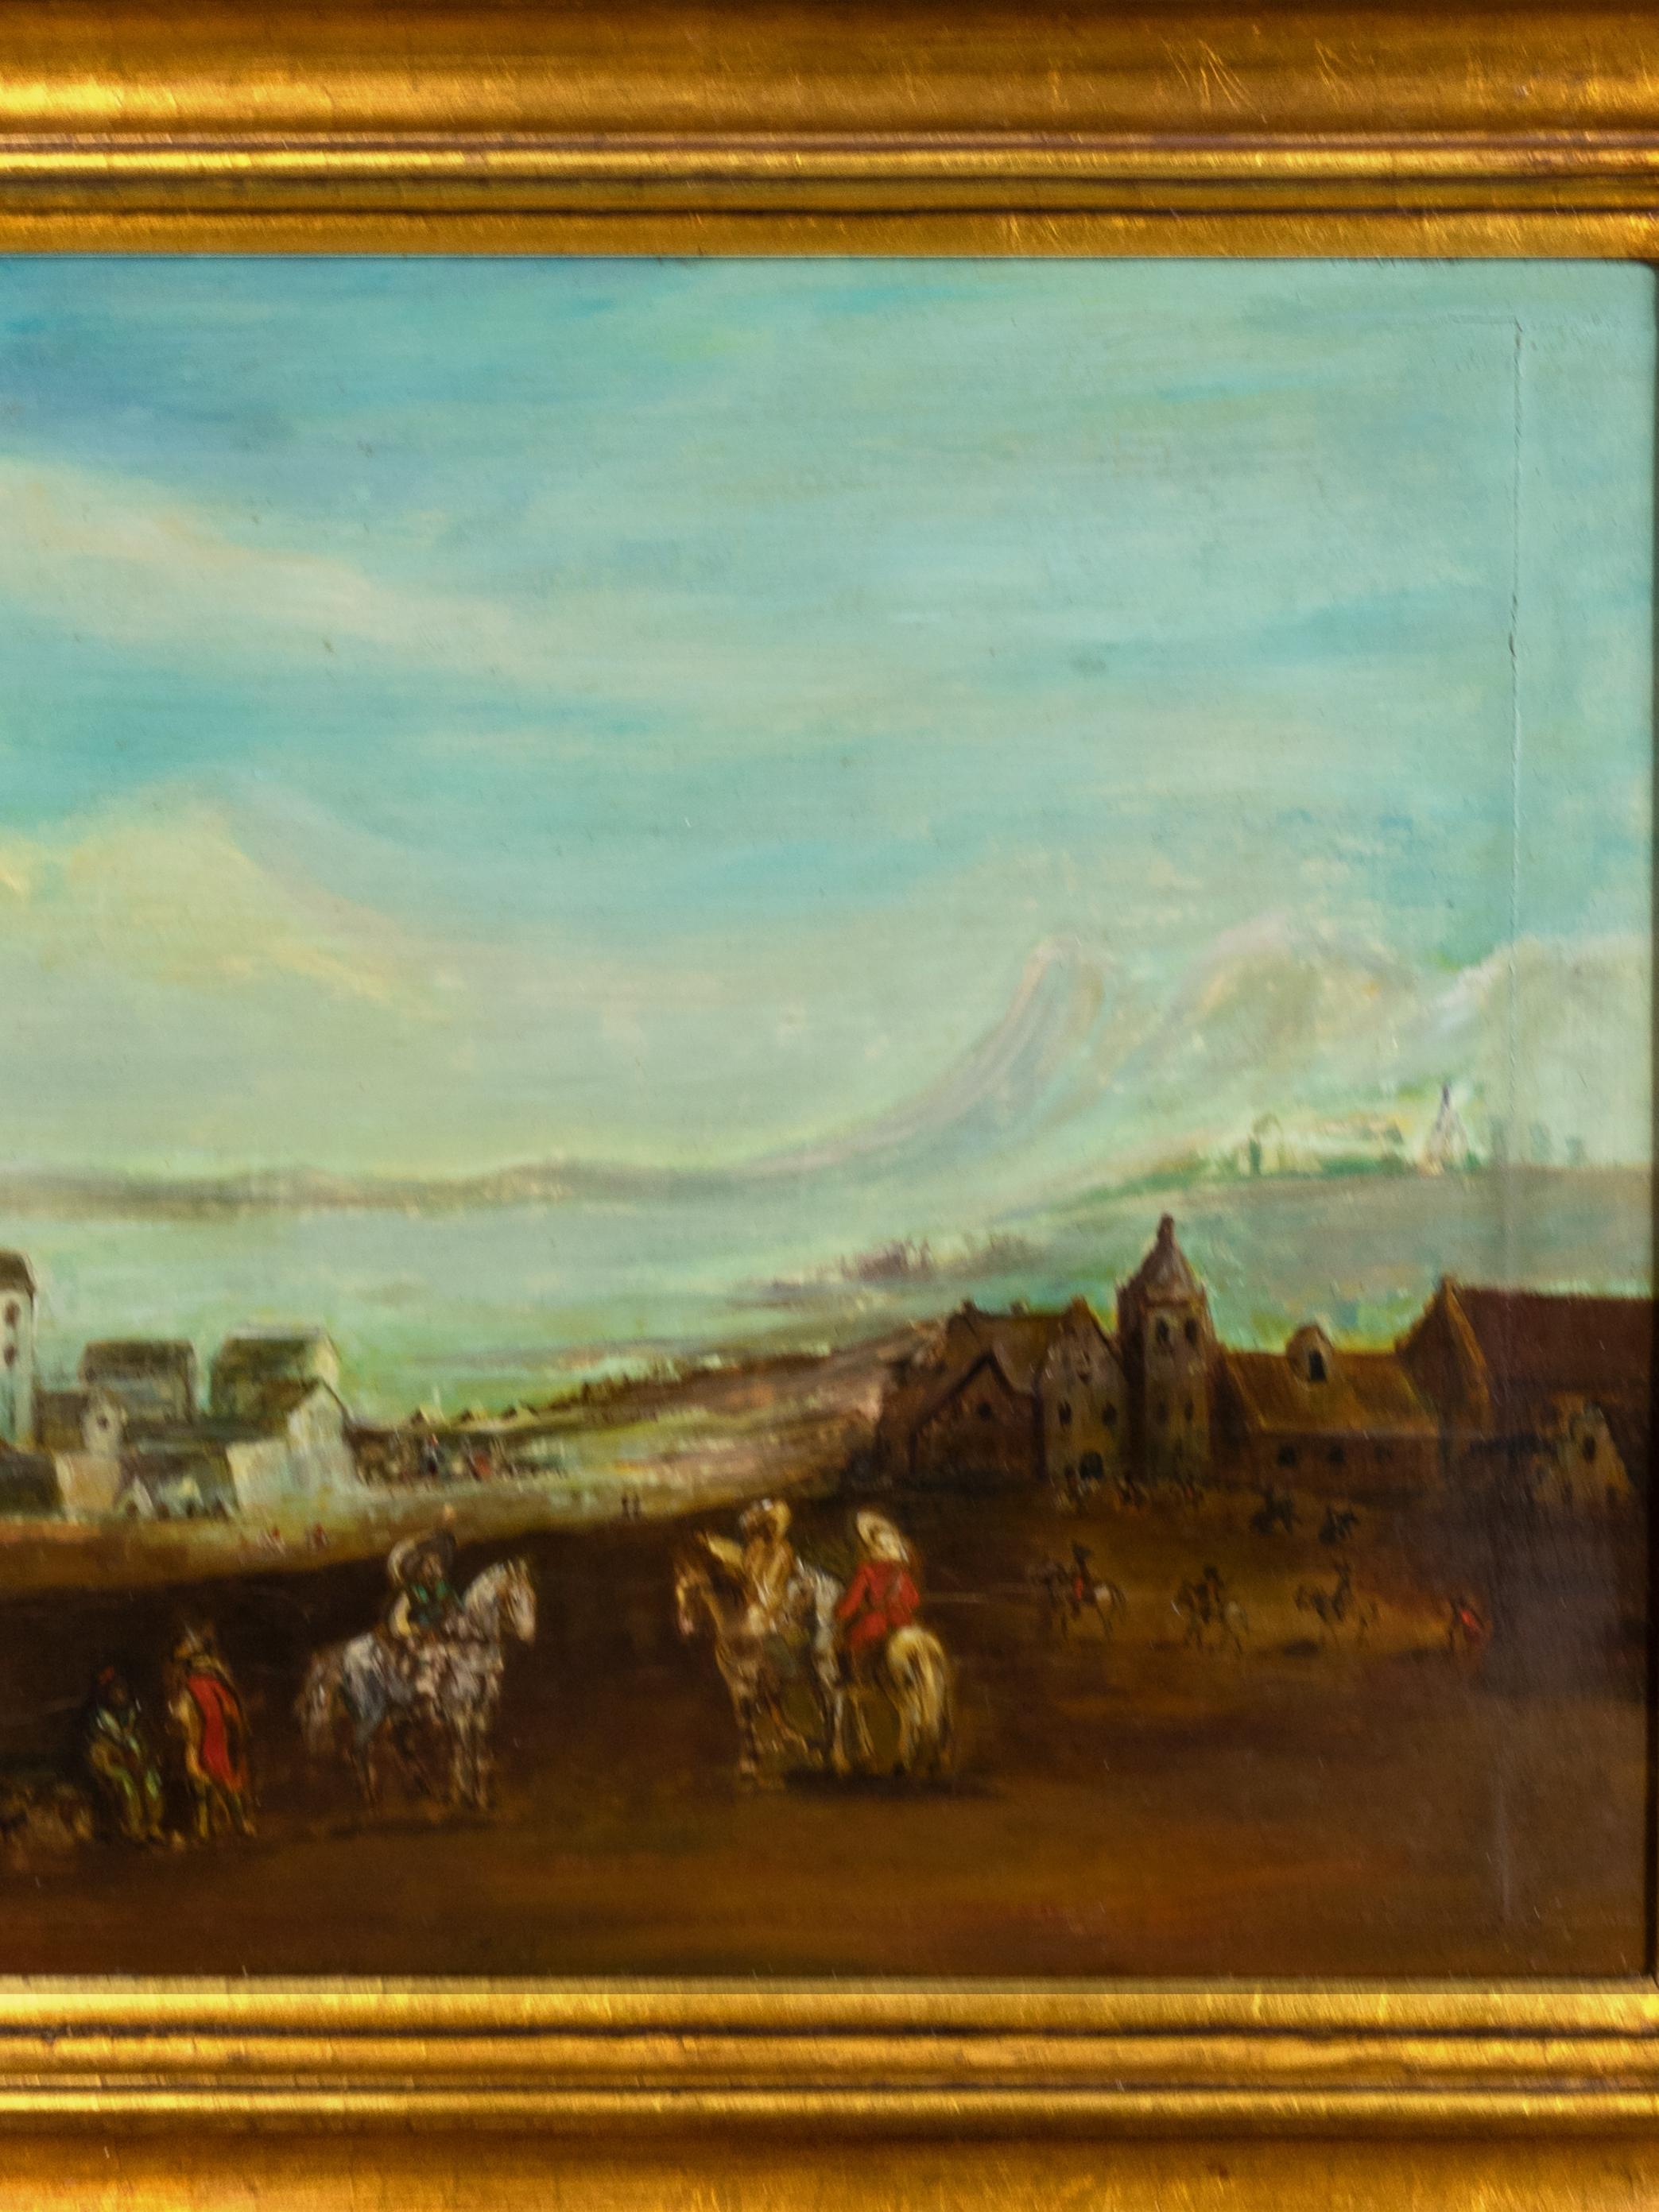 Ein romantisches Ölmotiv aus der Alten Welt zeigt Reiter, die in einer kleinen Stadt in der Nähe eines Flusses und von Bergen ankommen. 

Rahmen 64 x 50 cm 
Leinwand: 50 x 37,5 cm

